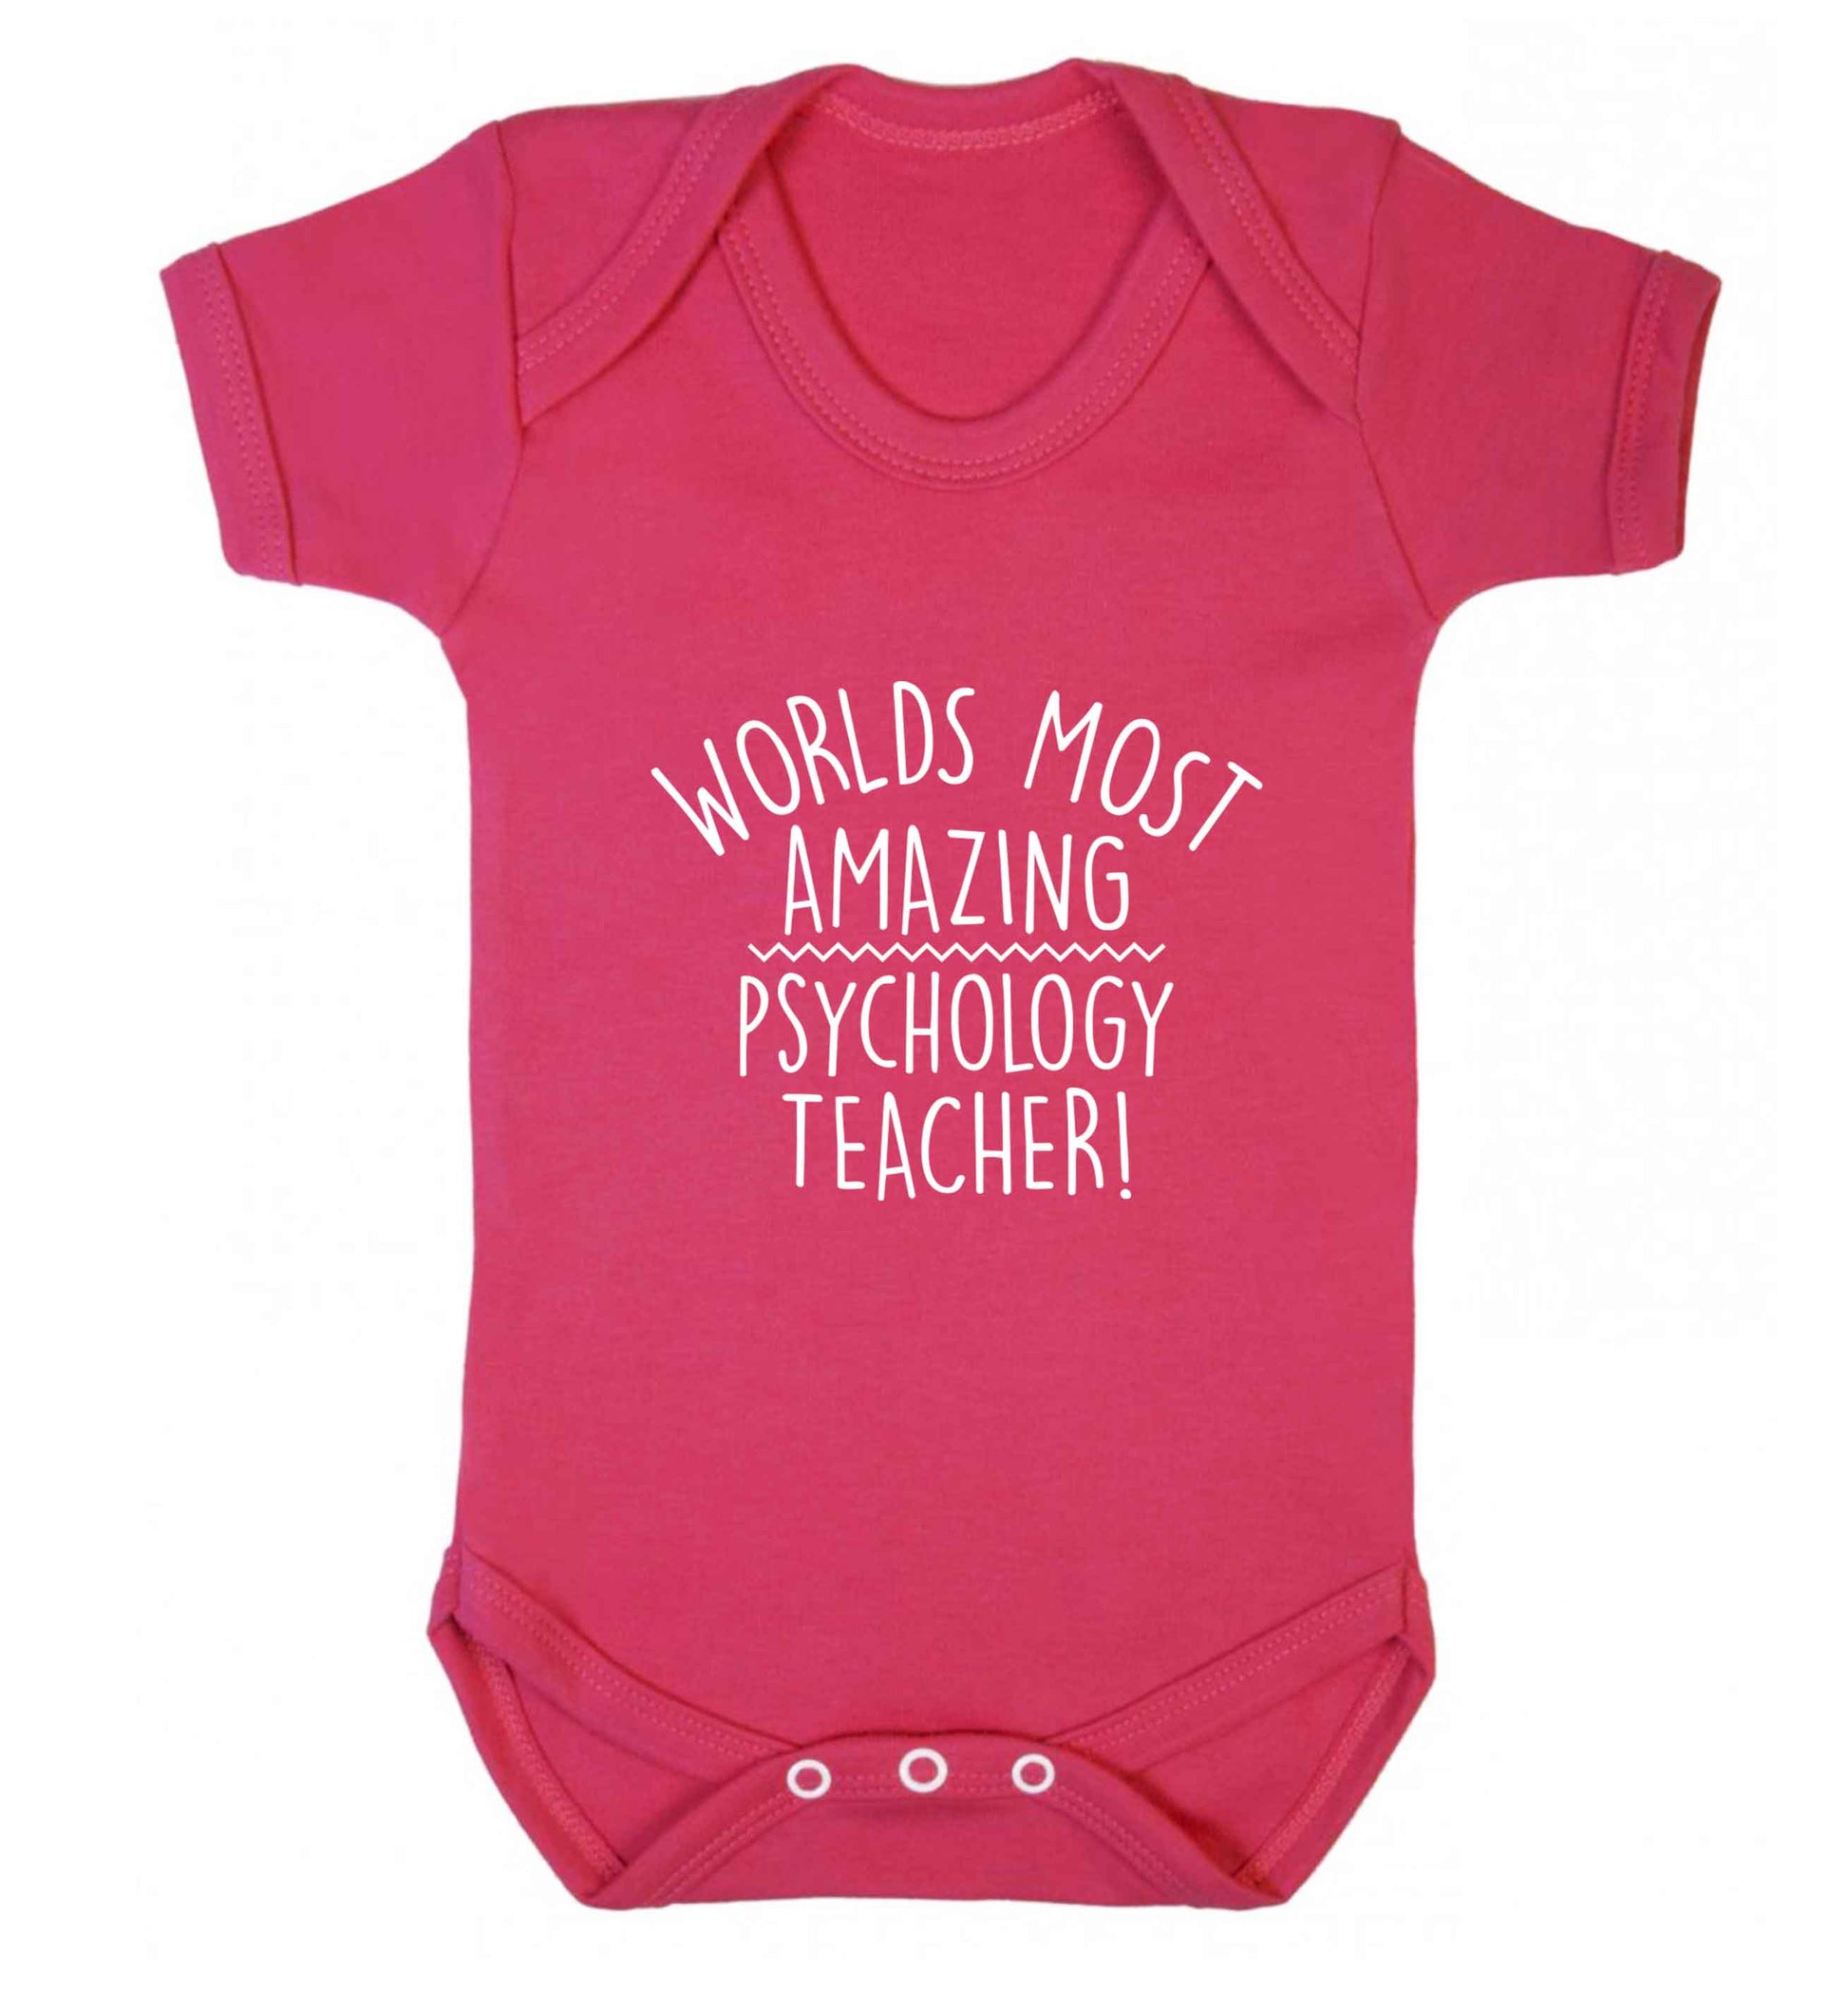 Worlds most amazing psychology teacher baby vest dark pink 18-24 months